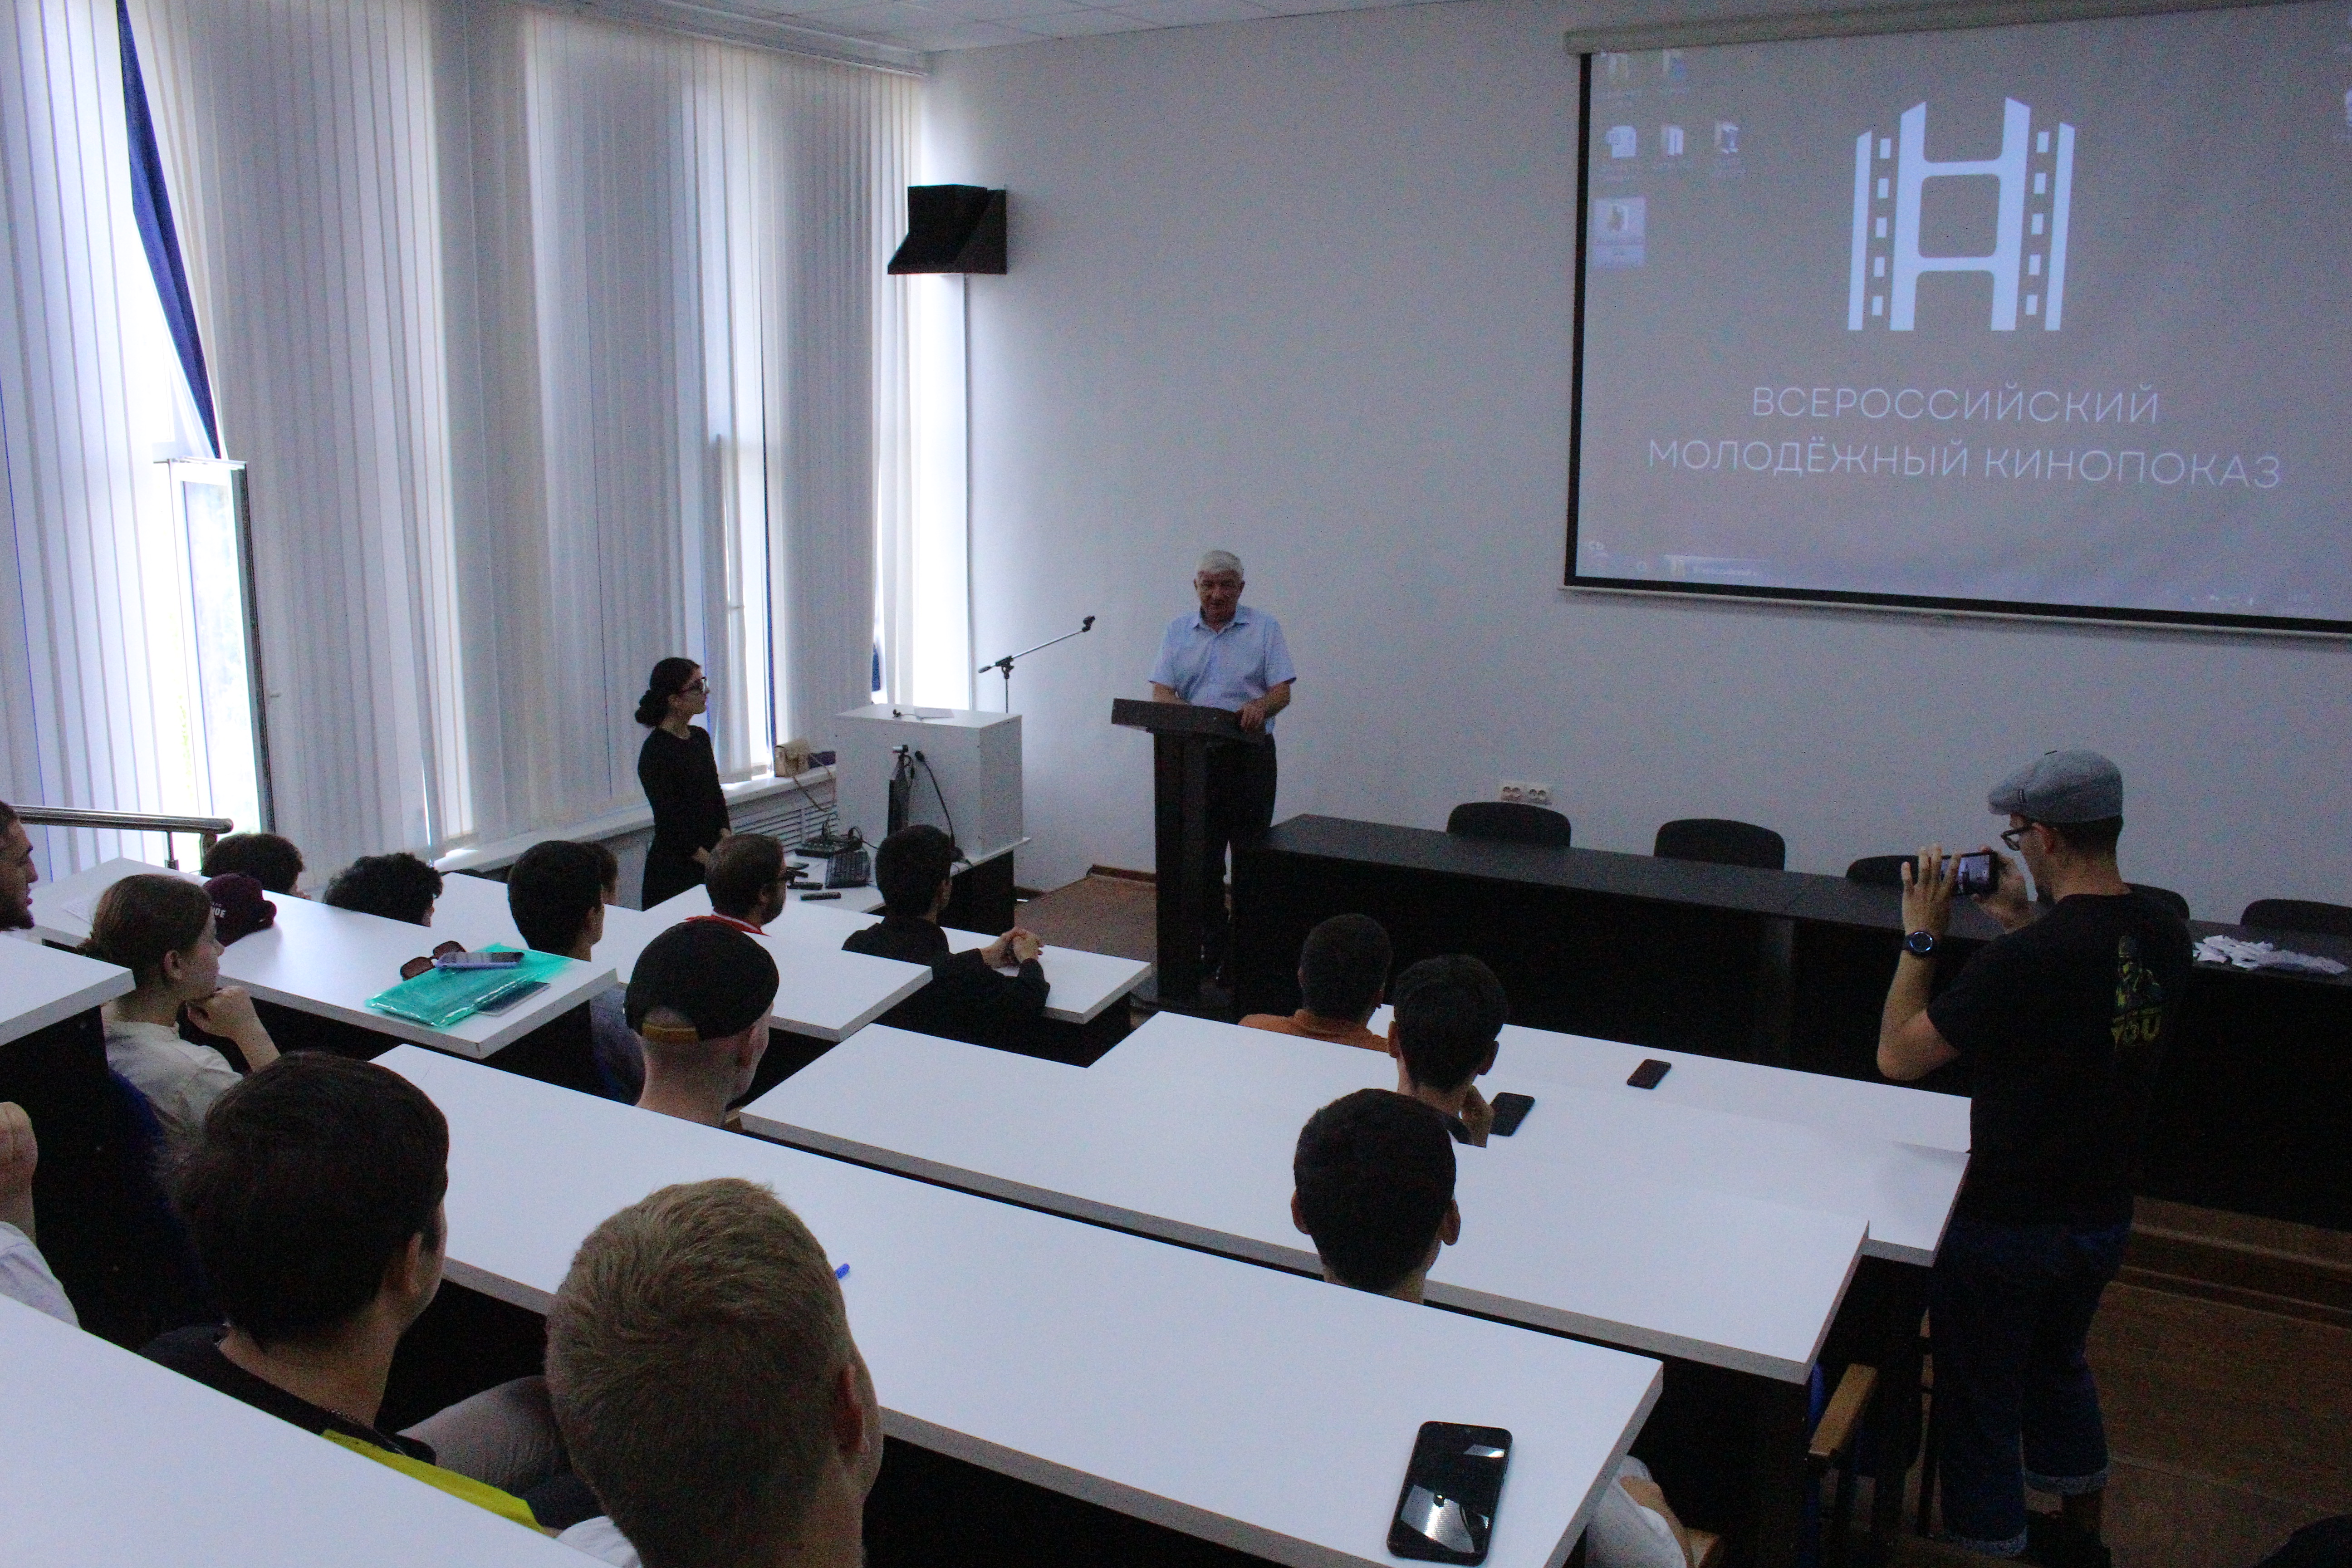 Студенты вуза присоединились к акции «Всероссийский молодёжный кинопоказ»